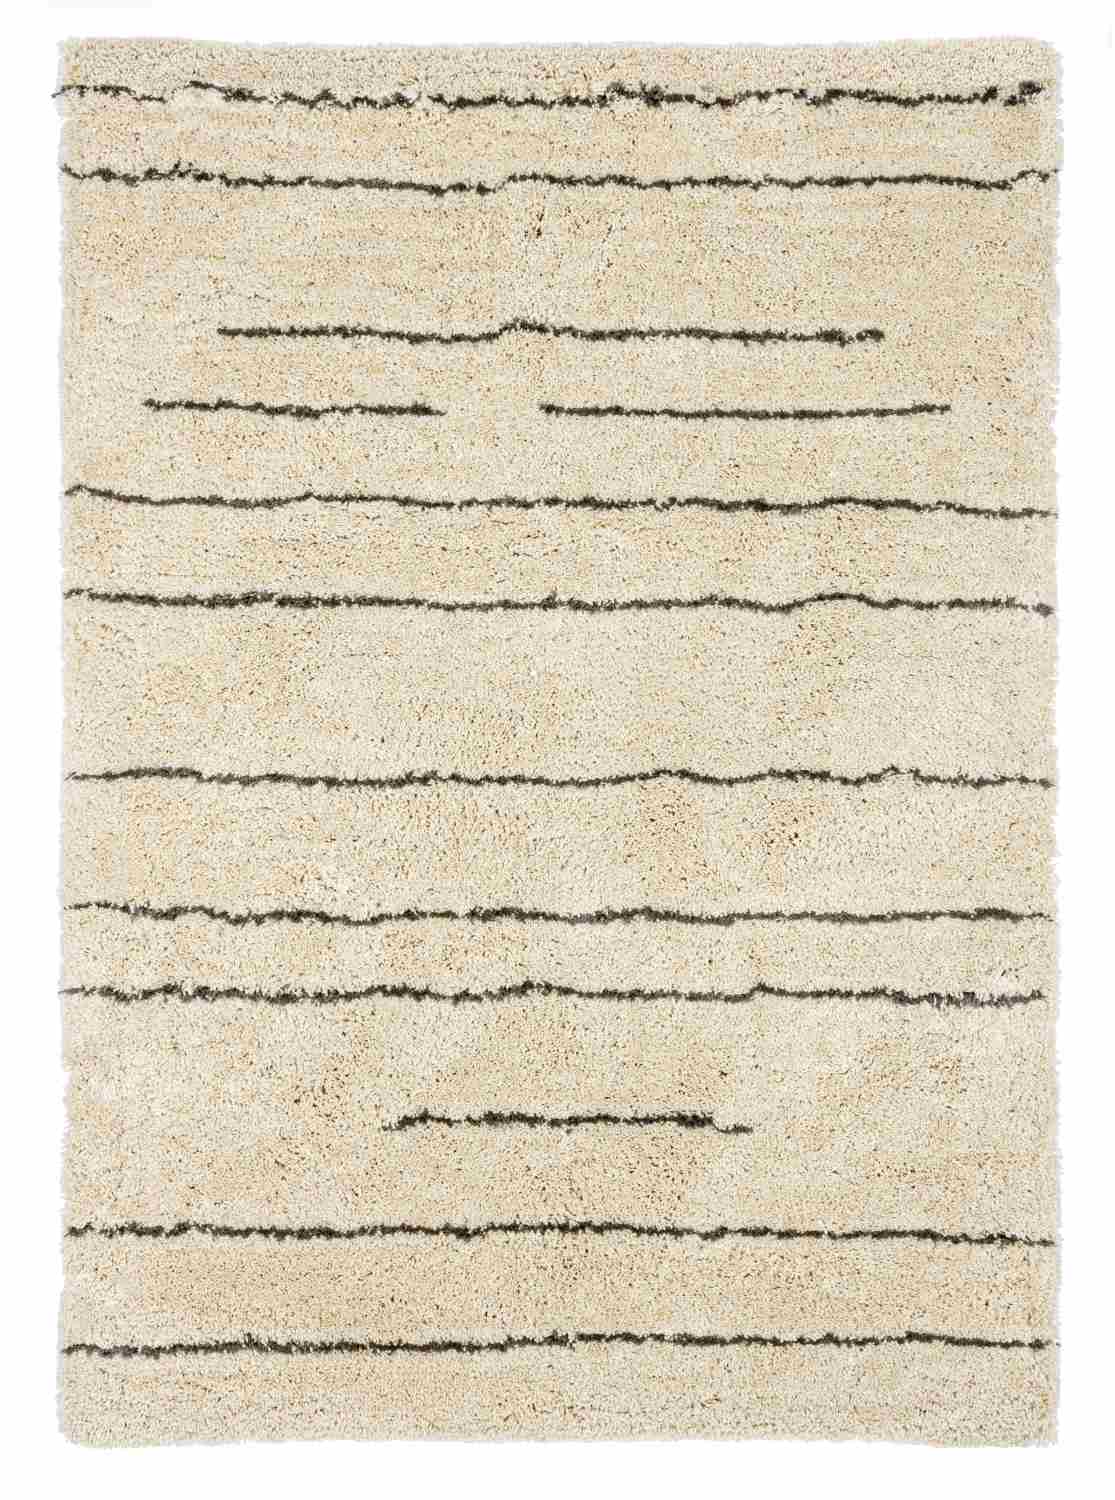 Der Teppich Linee überzeugt mit seinem klassischen Design. Gefertigt wurde die Vorderseite aus 100% Polyester und die Rückseite aus 100% Baumwolle. Der Teppich besitzt einen Sand Farbton und die Maße von 140x200 cm.